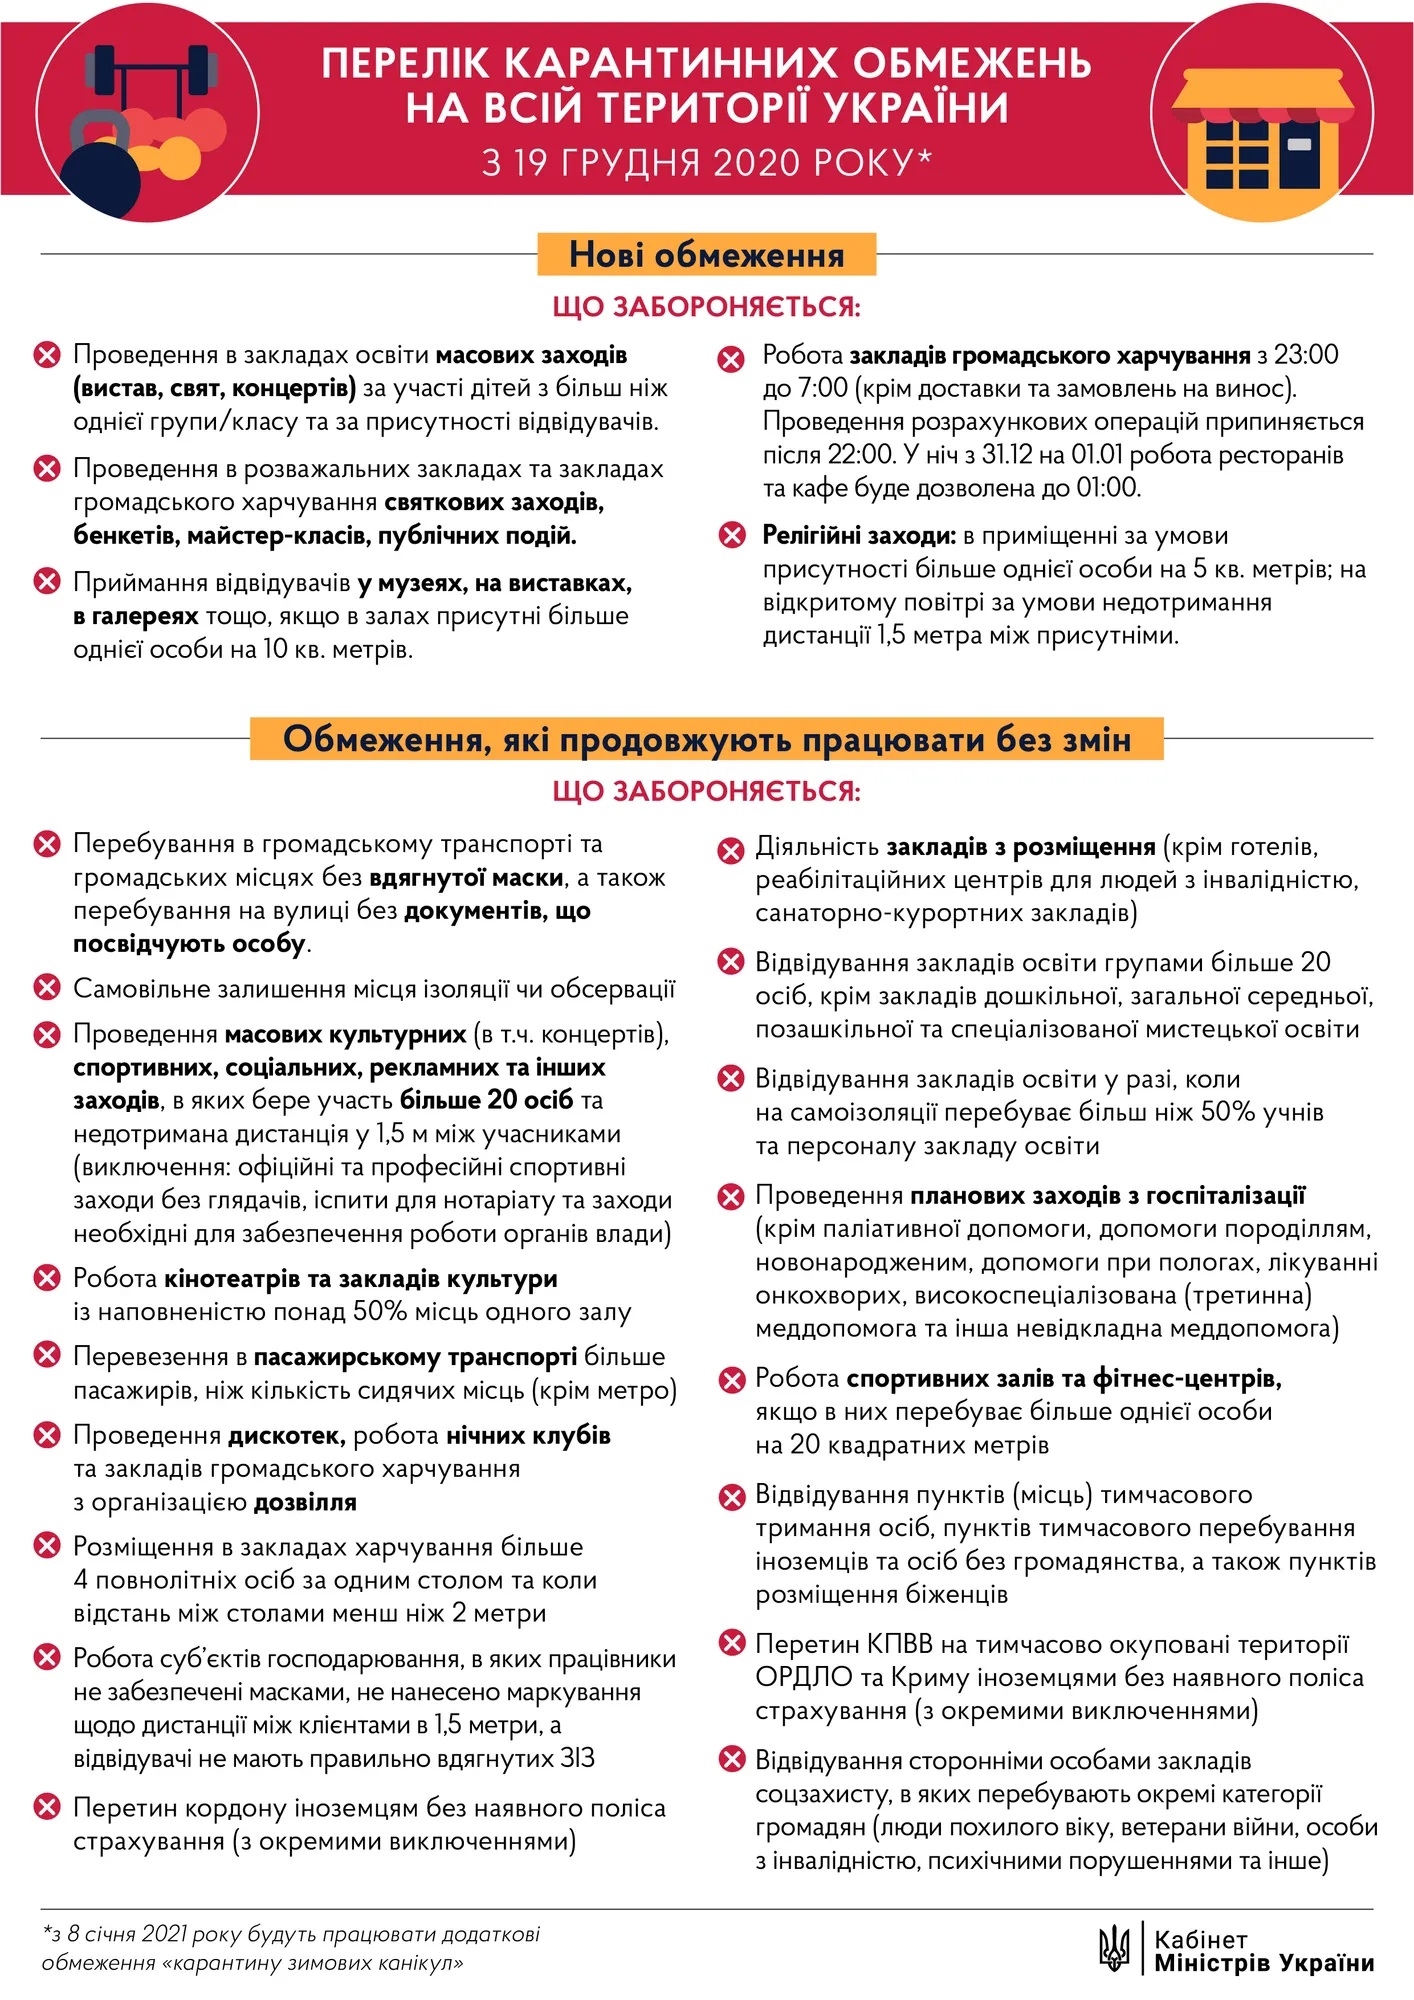 Кабмін ввів нові карантинні обмеження в Україні з 19 грудня